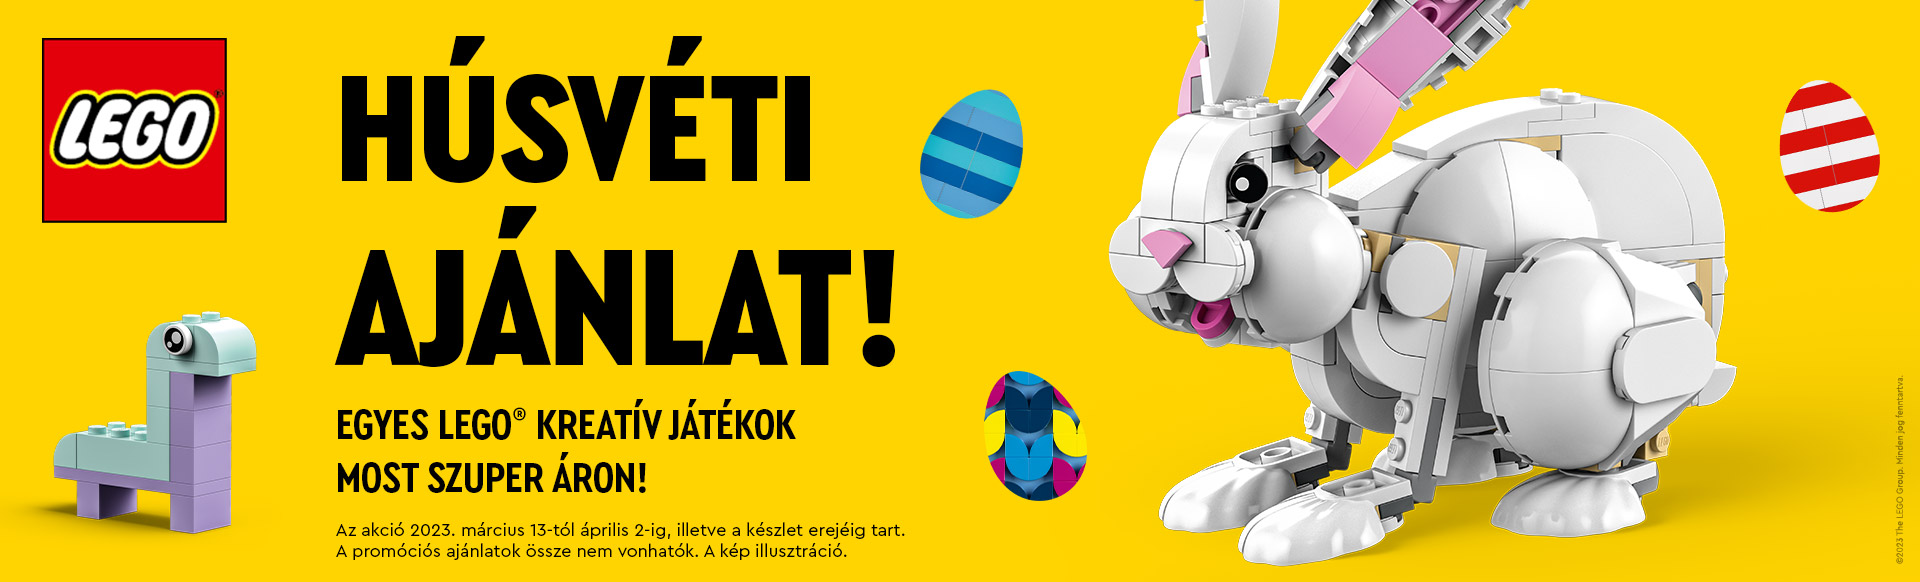 HÚSVÉTI AJÁNLAT! Egyes LEGO® kreatív játékok most szuper áron 2023. március 13 - április 2 között!